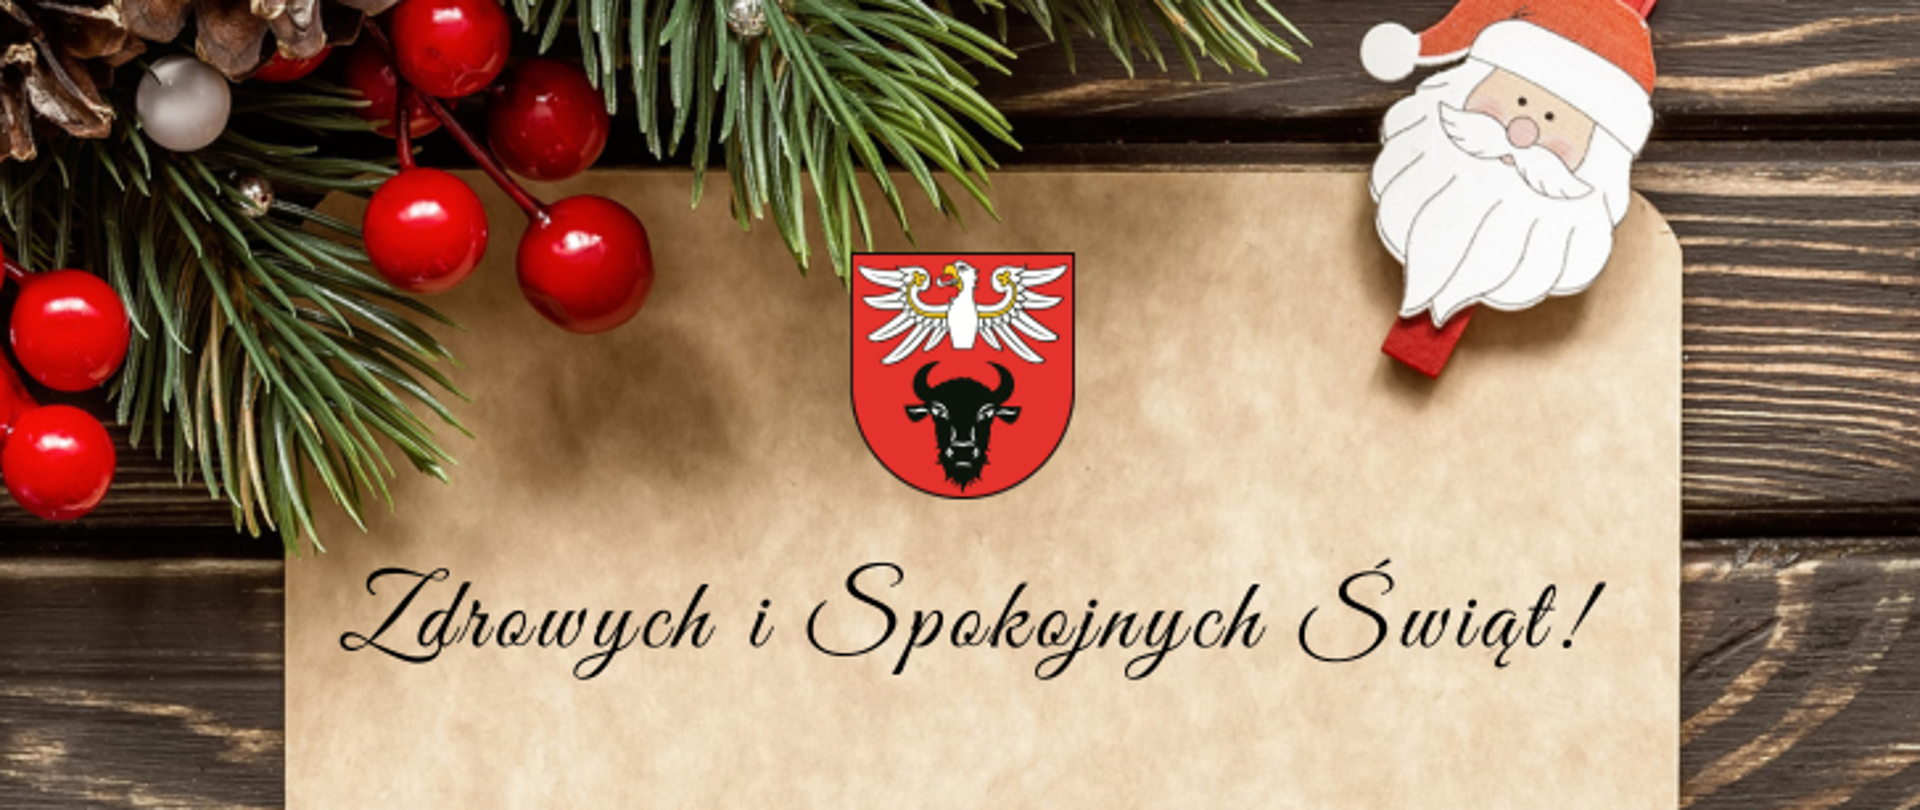 banner z świątecznym zdjęciem, na środku znajduje się tekst "Zdrowych i Spokojnych Świąt!", logo powiatu zambrowksiego